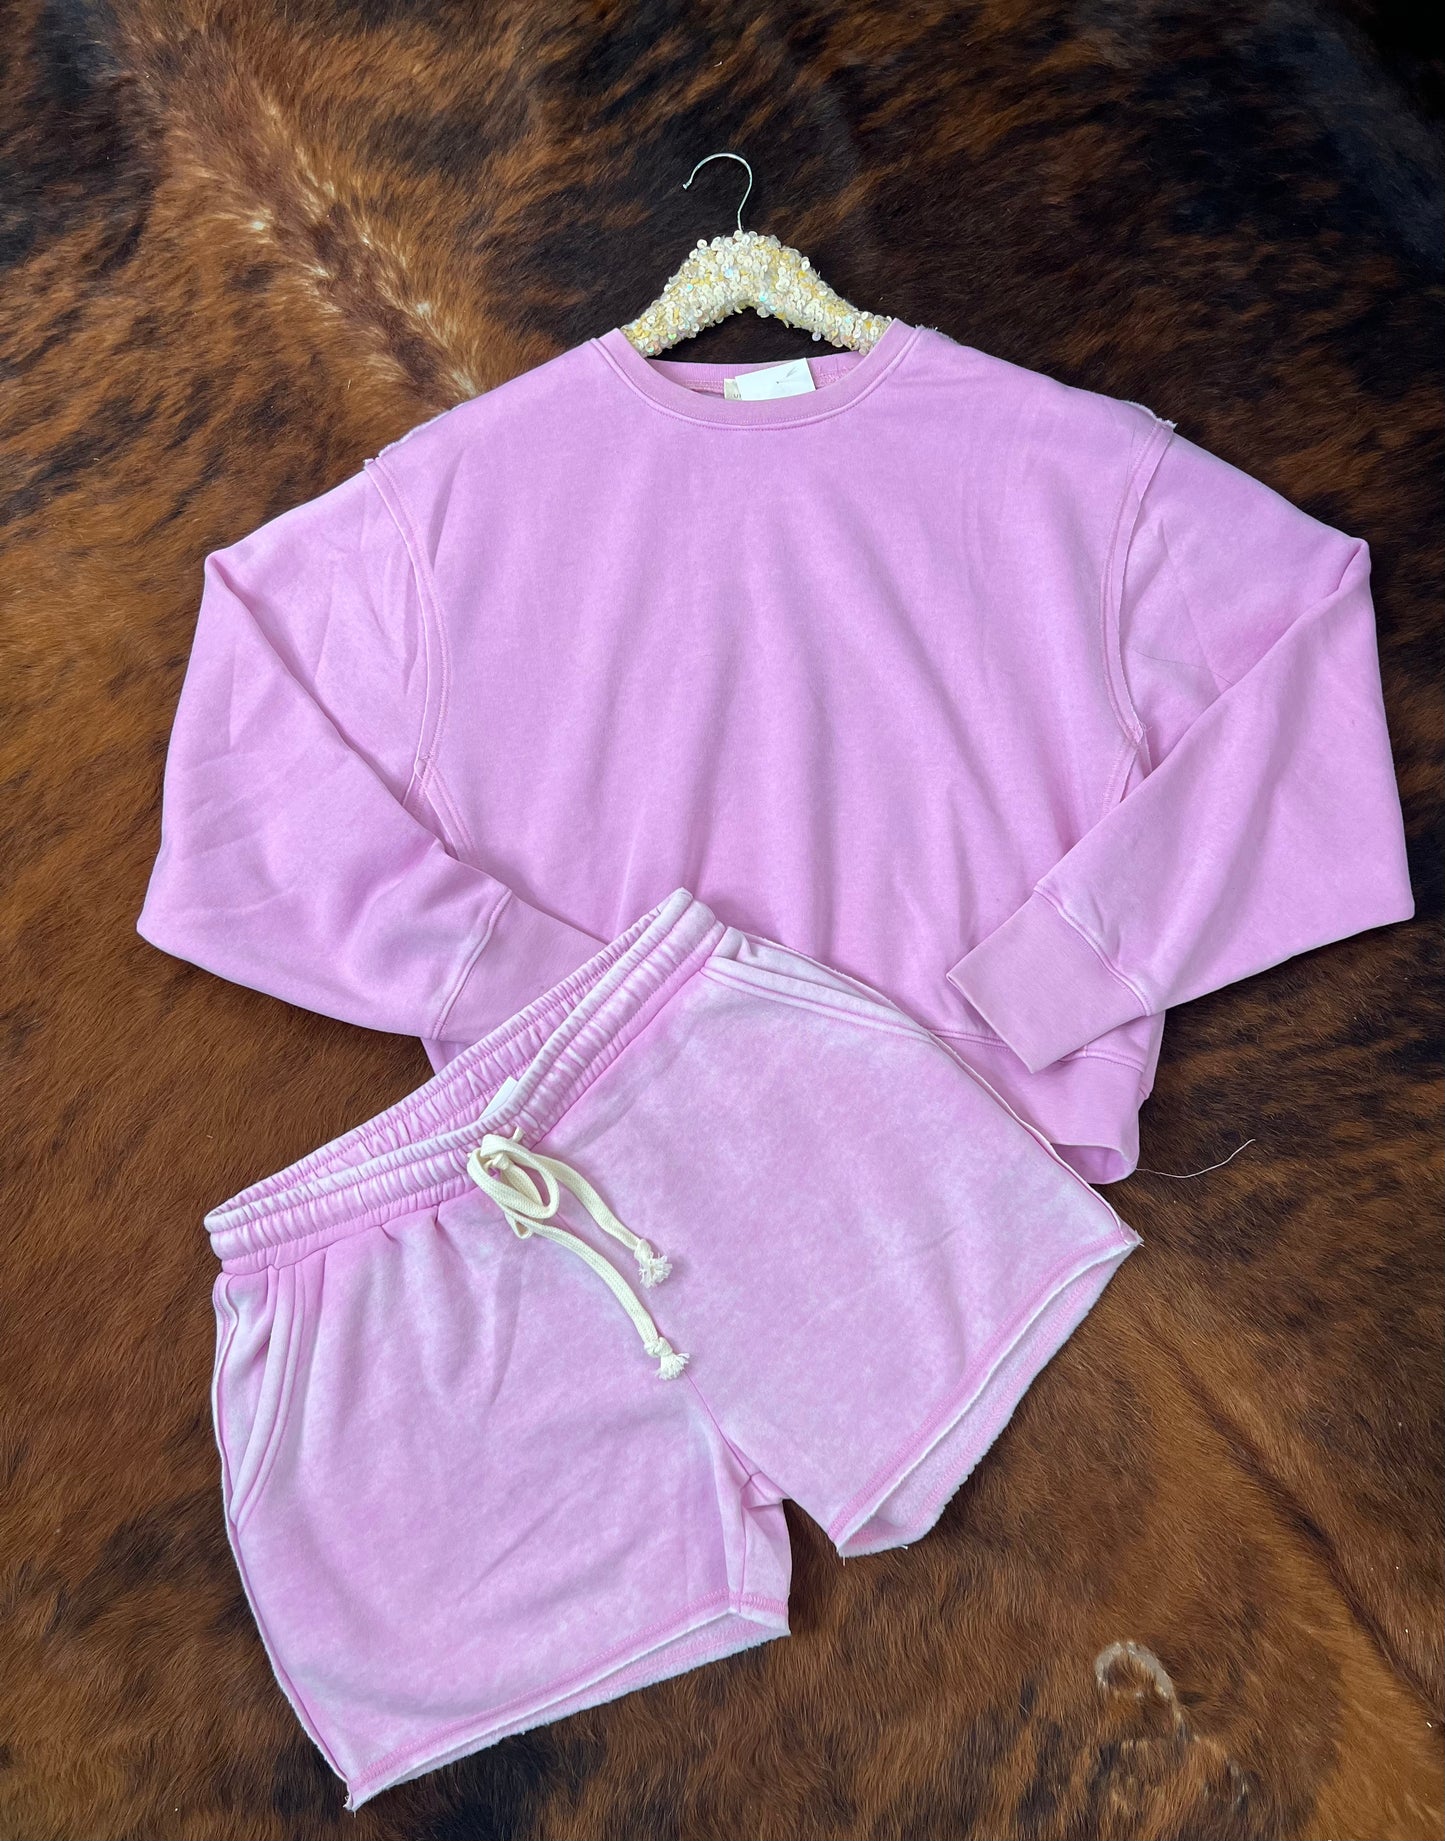 Something Easy Sweatshirt in Pink